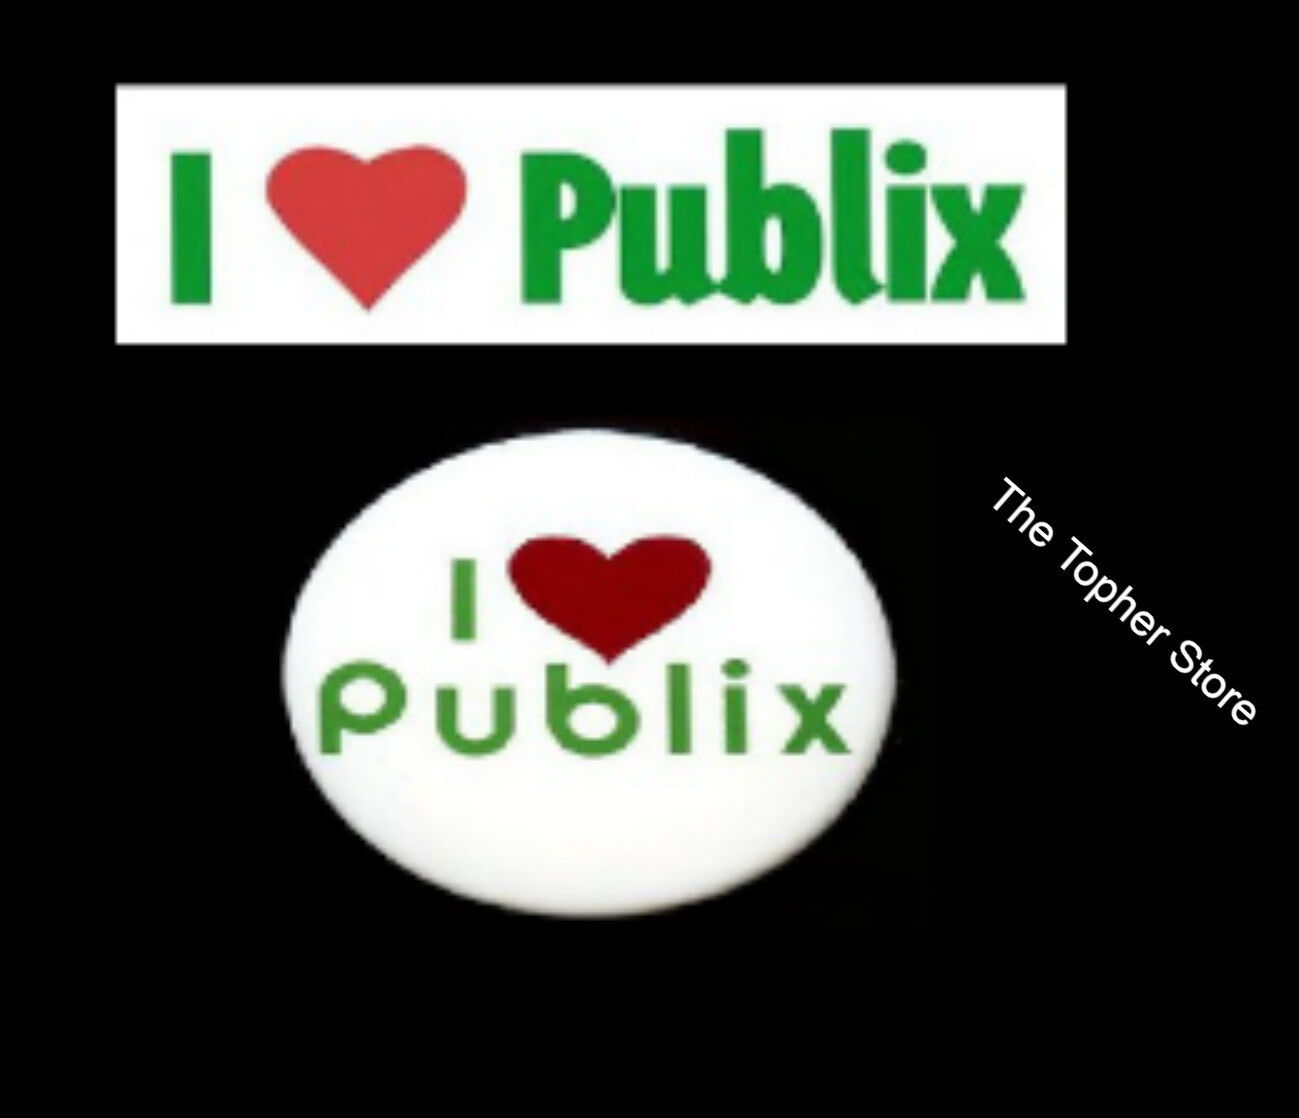 Publix Bumper Sticker and Pin - I Heart Publix - Fast Ship